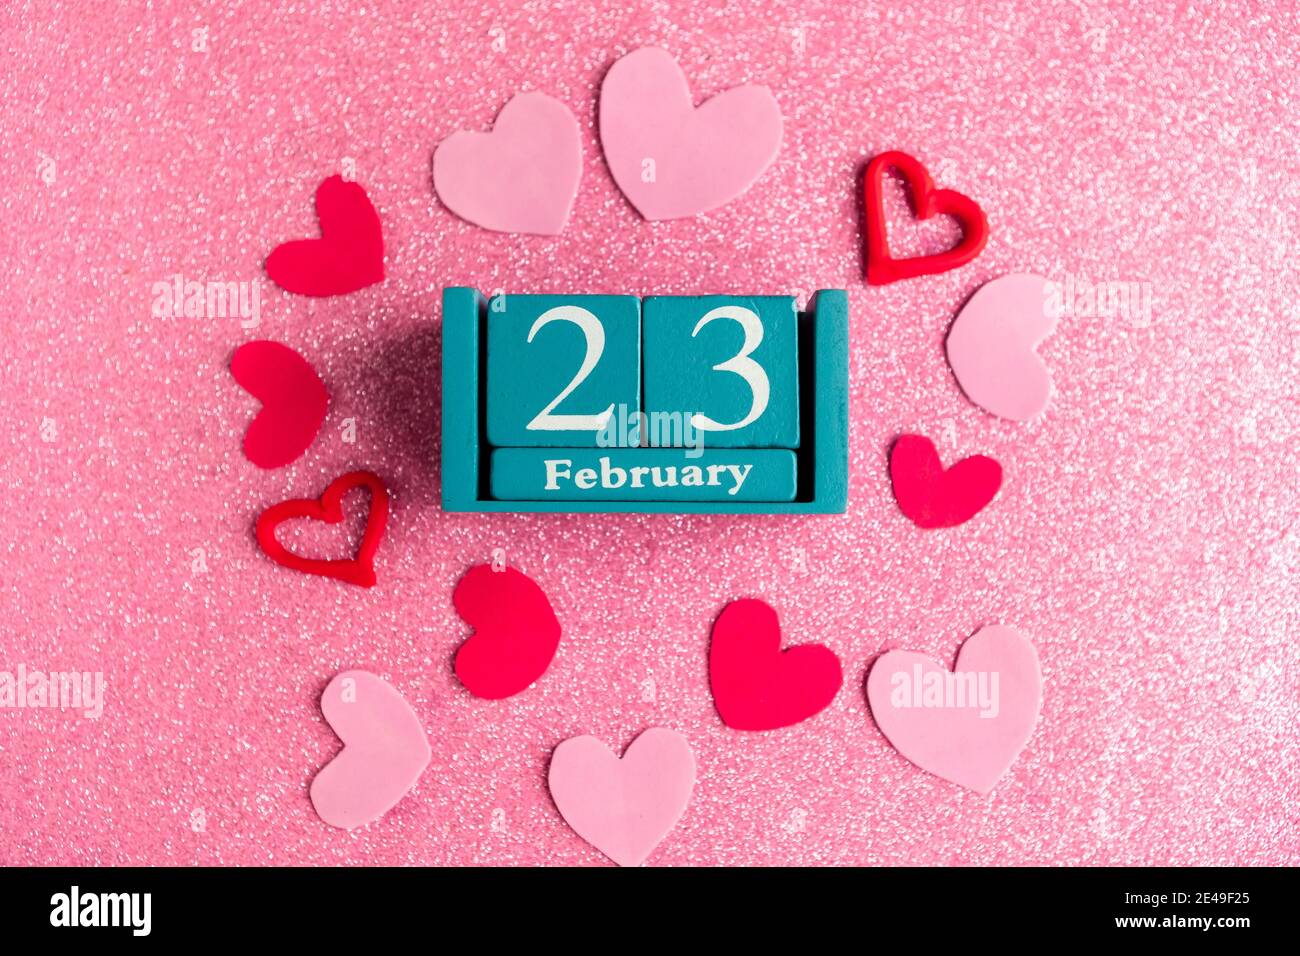 Février 23. Calendrier cube bleu avec mois et date et décorations sur fond rose scintillant. Banque D'Images